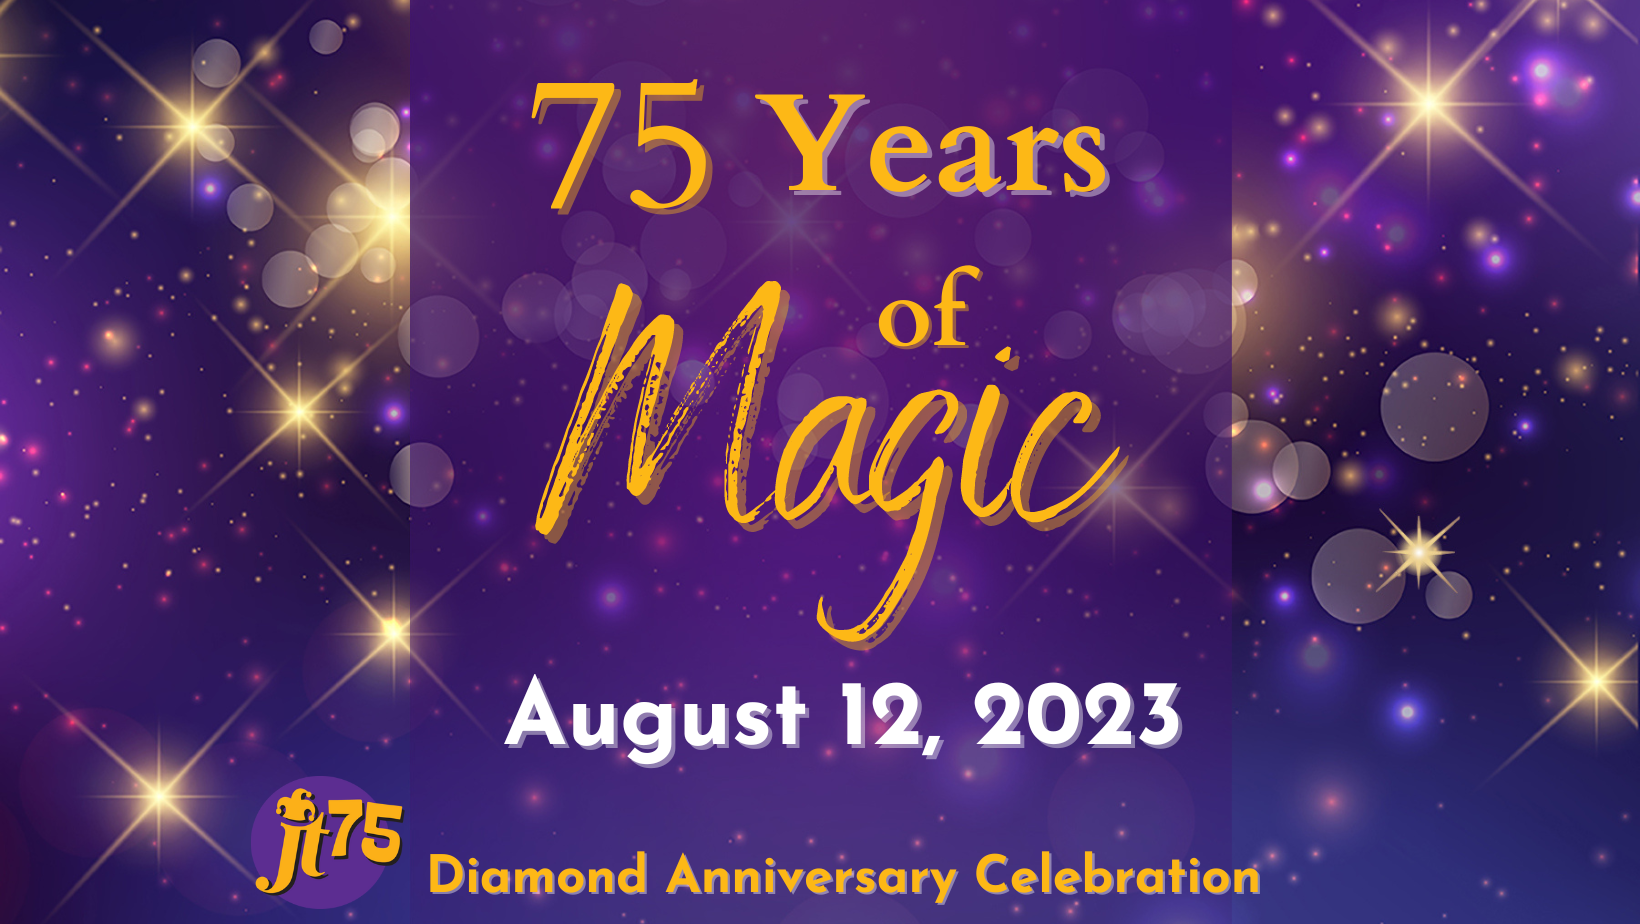 75 Years of Magic